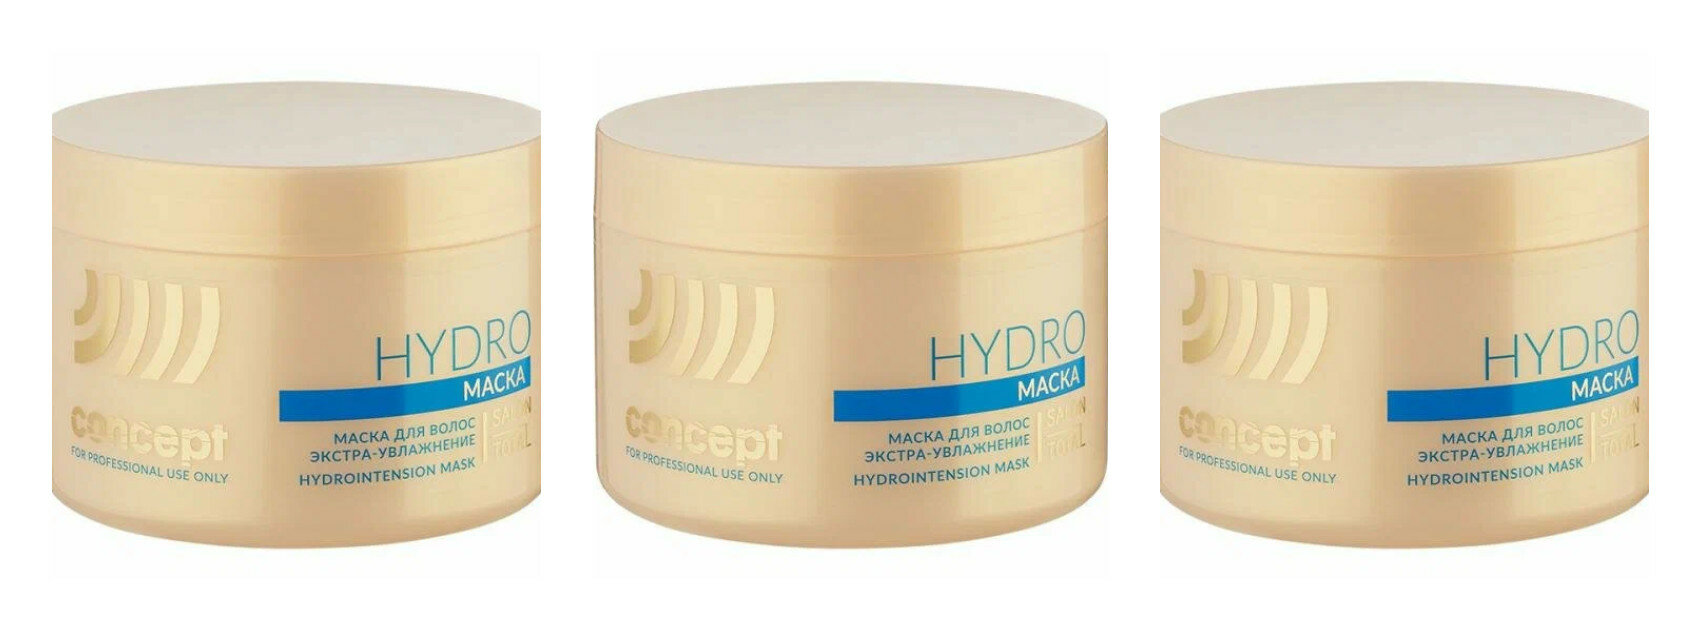 Маска для волос экстра-увлажнение Concept Salon Total Hydro Hydrointension mask, 500 мл, 3 шт.